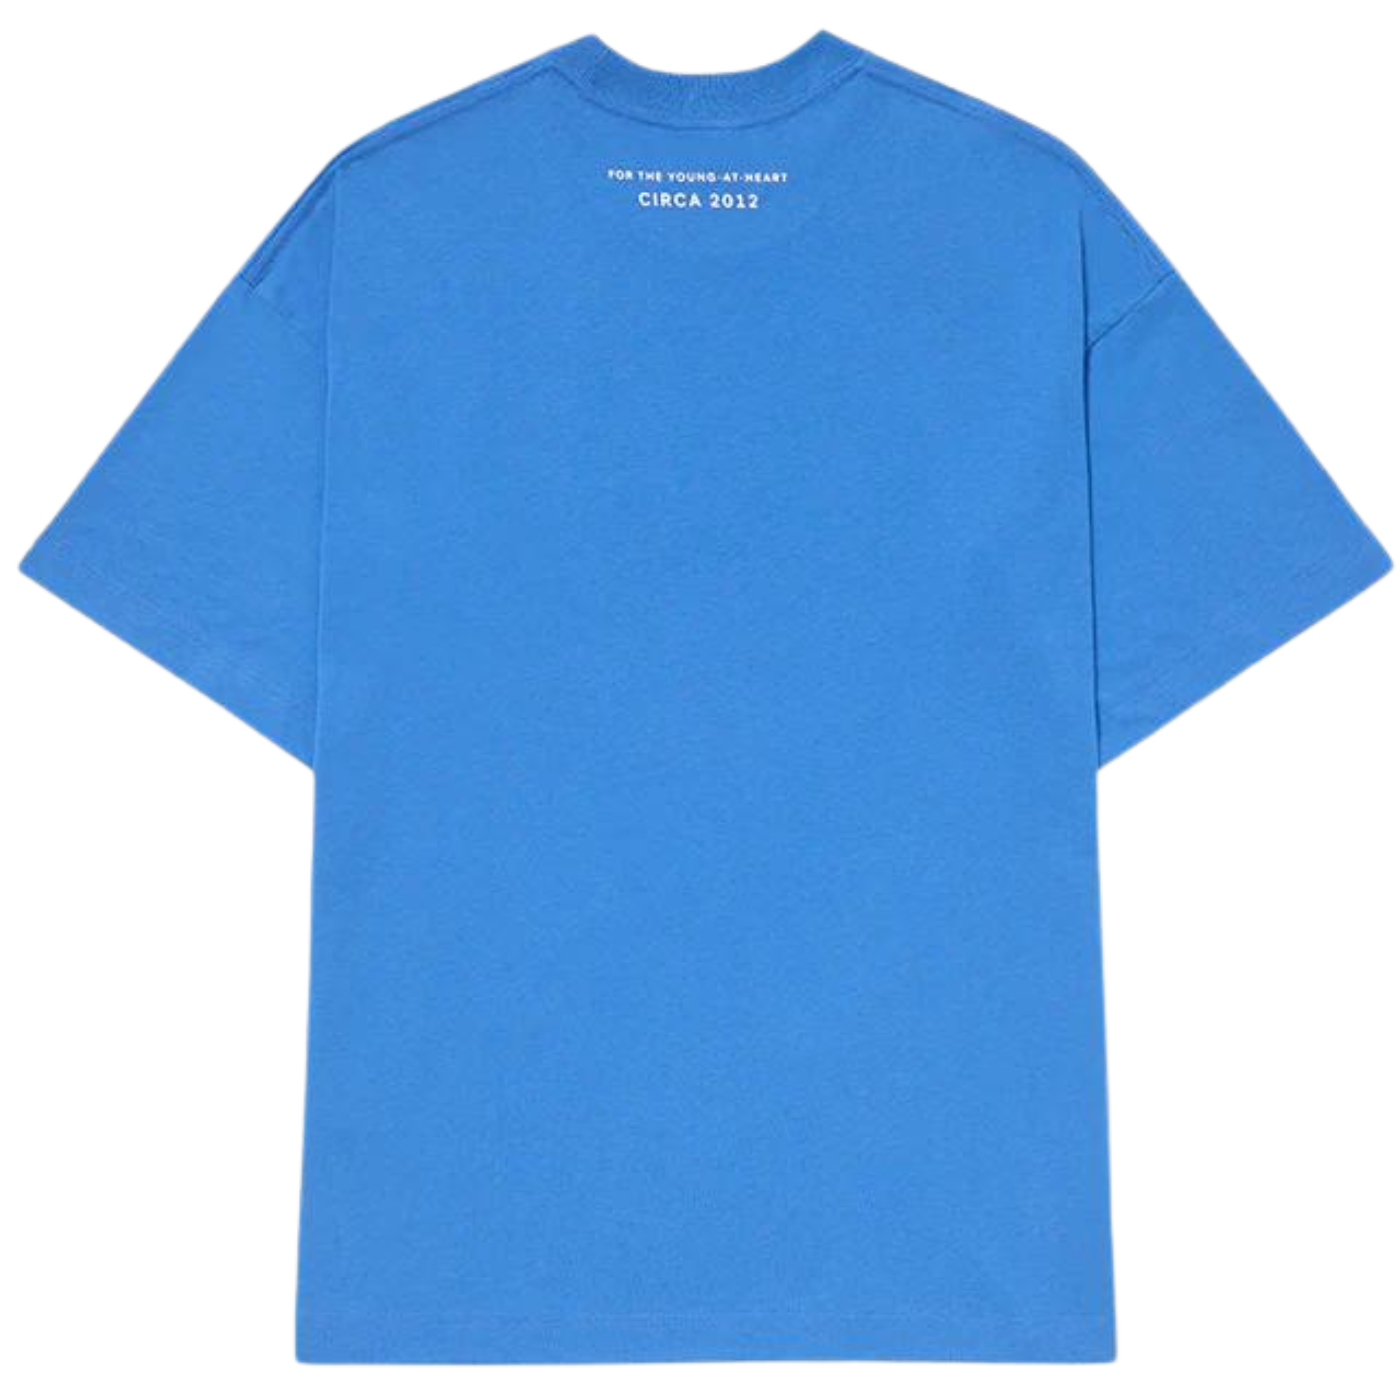 Camiseta Piet Circa Oversized  Cobalt Blue